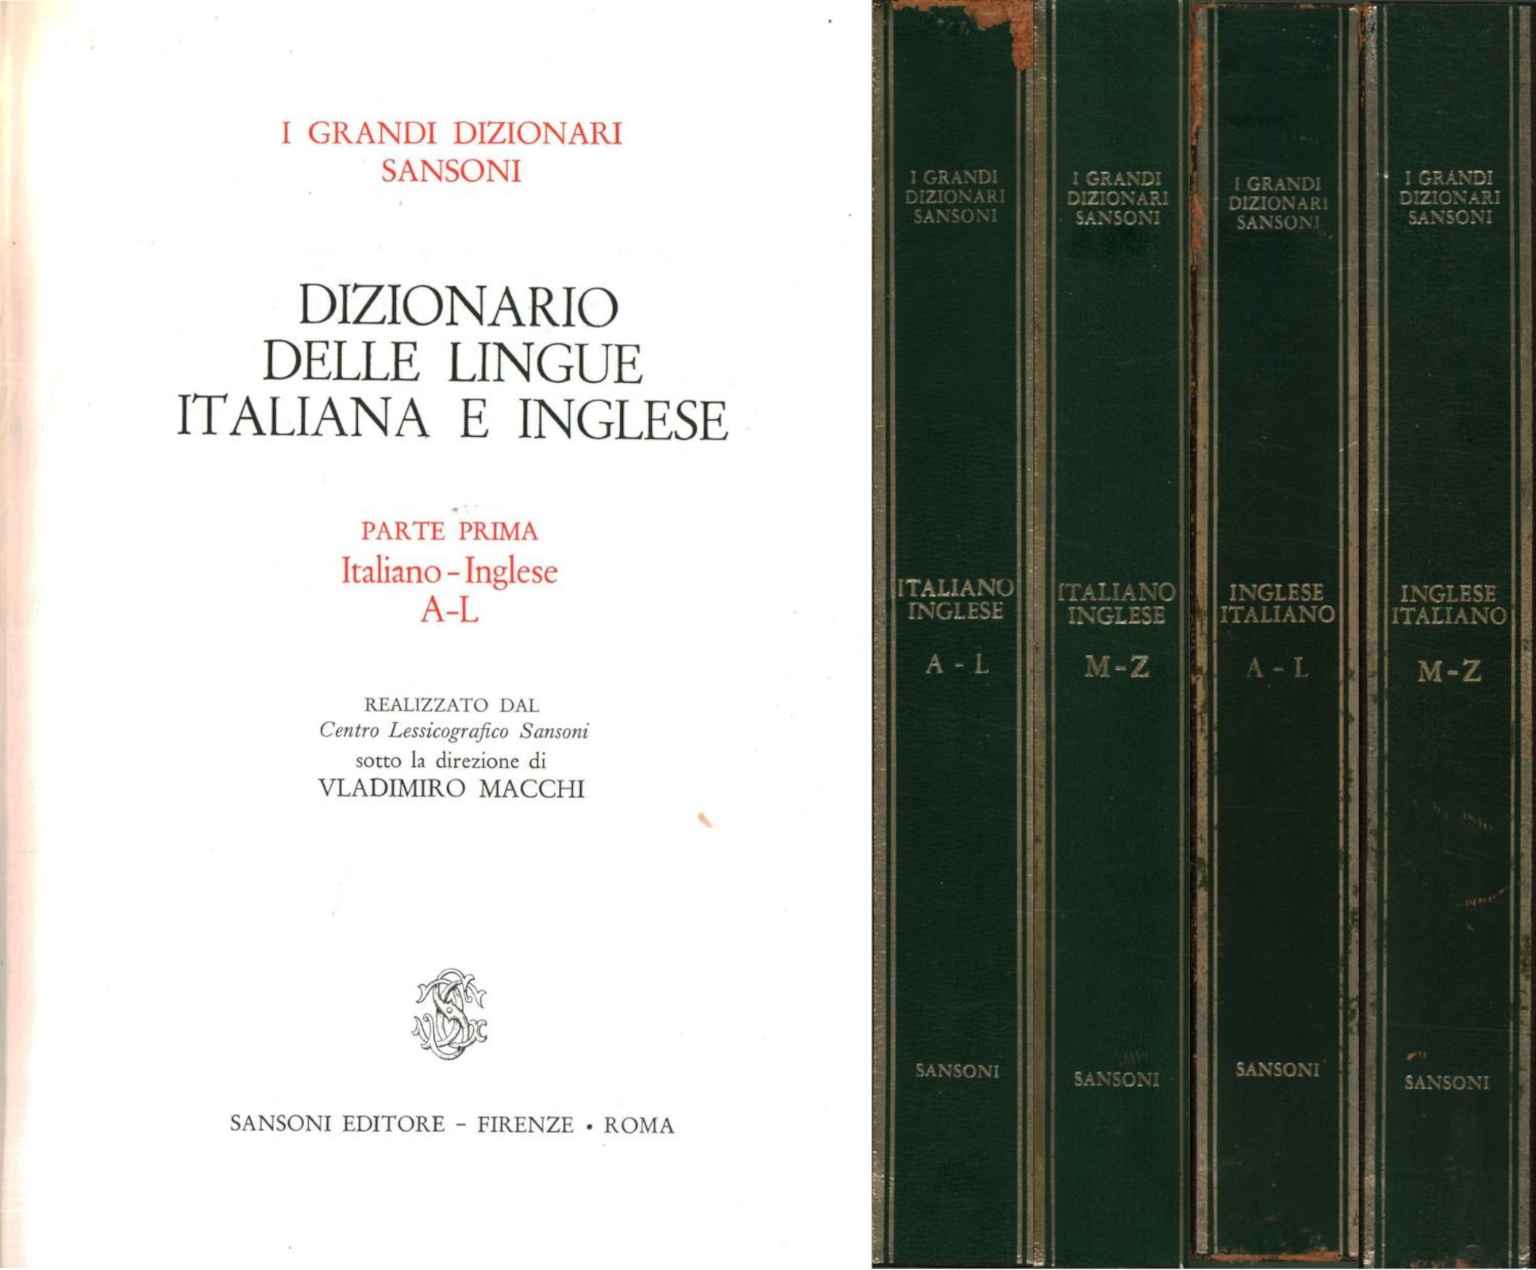 Dictionnaire des langues italienne et anglaise